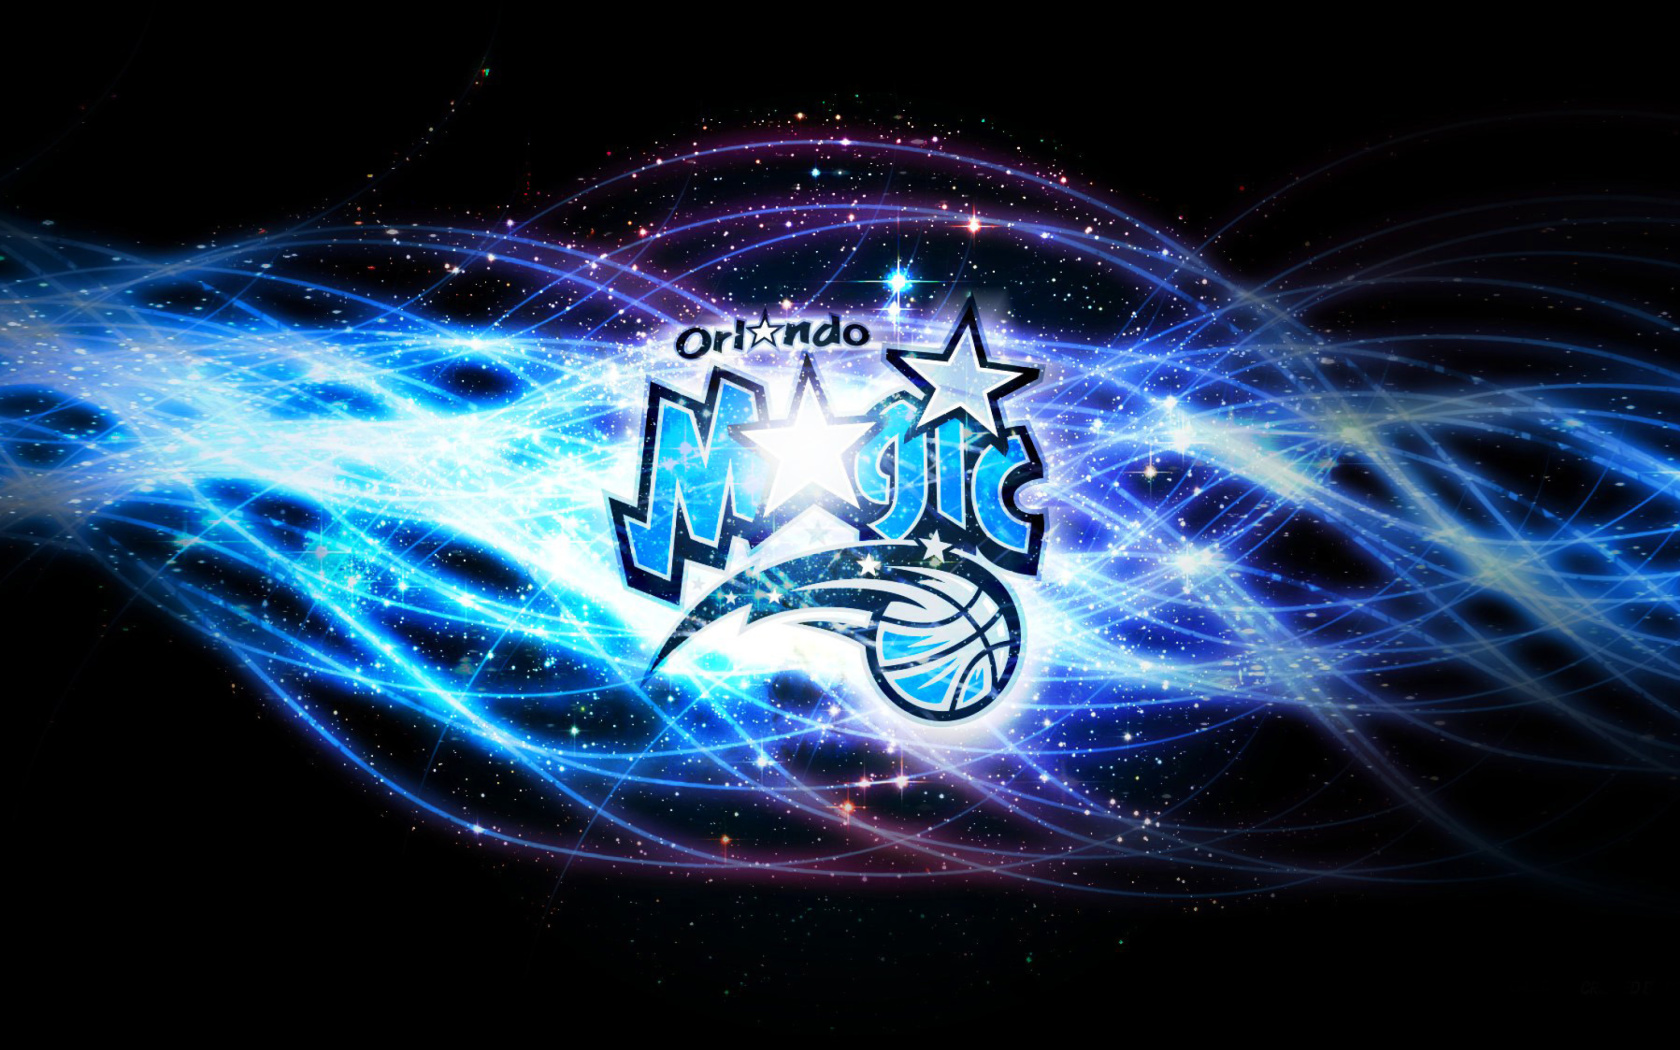 Sfondi Orlando Magic, Southeast Division 1680x1050